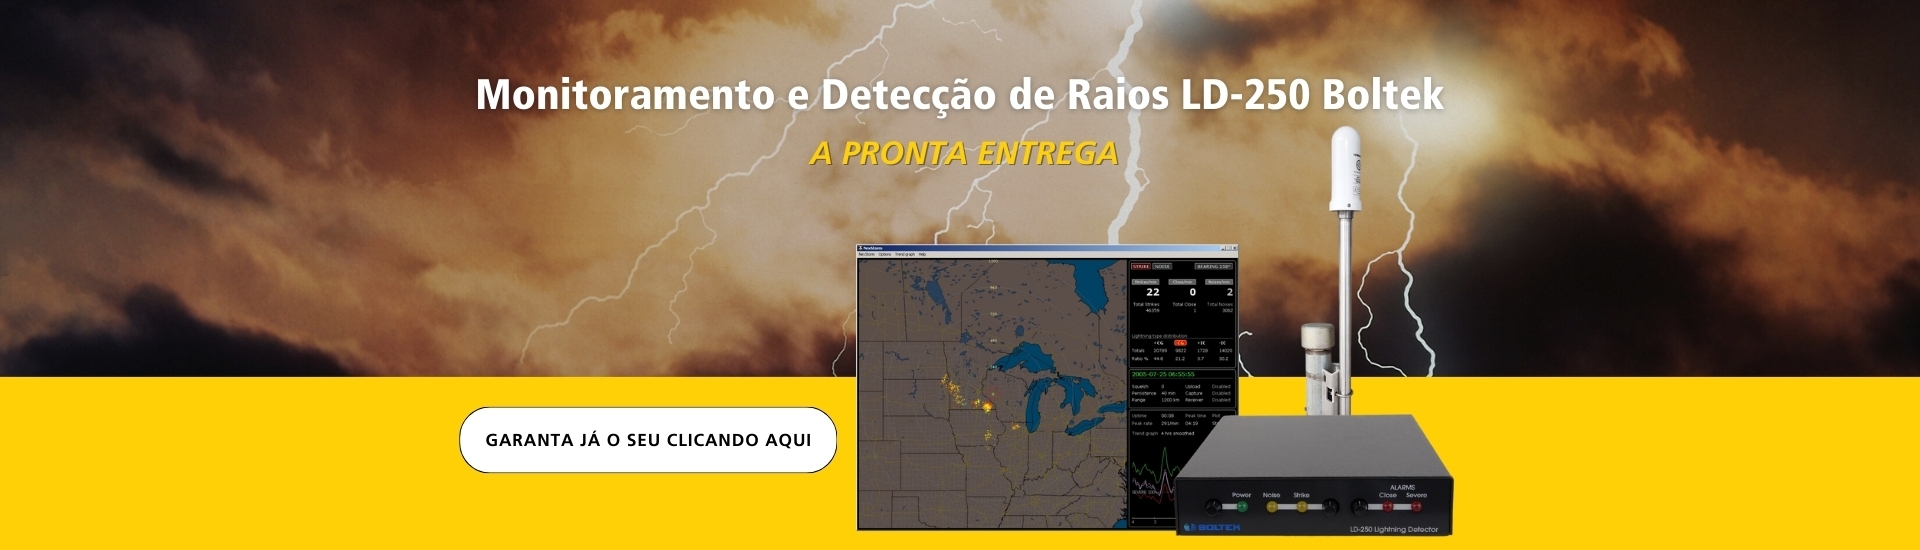 Detector de Raios LD-250 